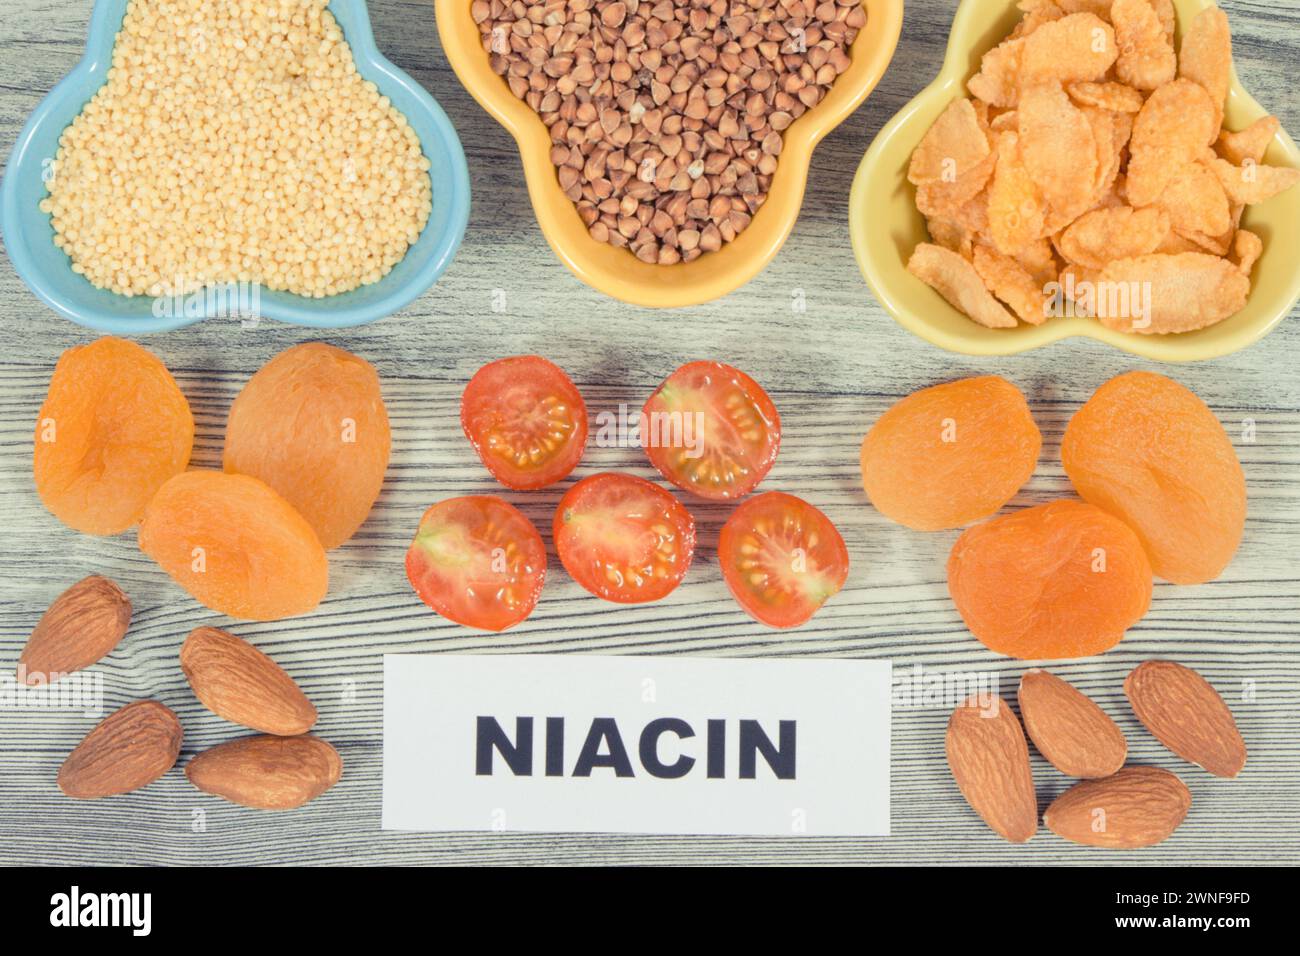 Cibo sano e nutriente come fonte naturale niacina, altre vitamine o minerali vari e fibre alimentari Foto Stock